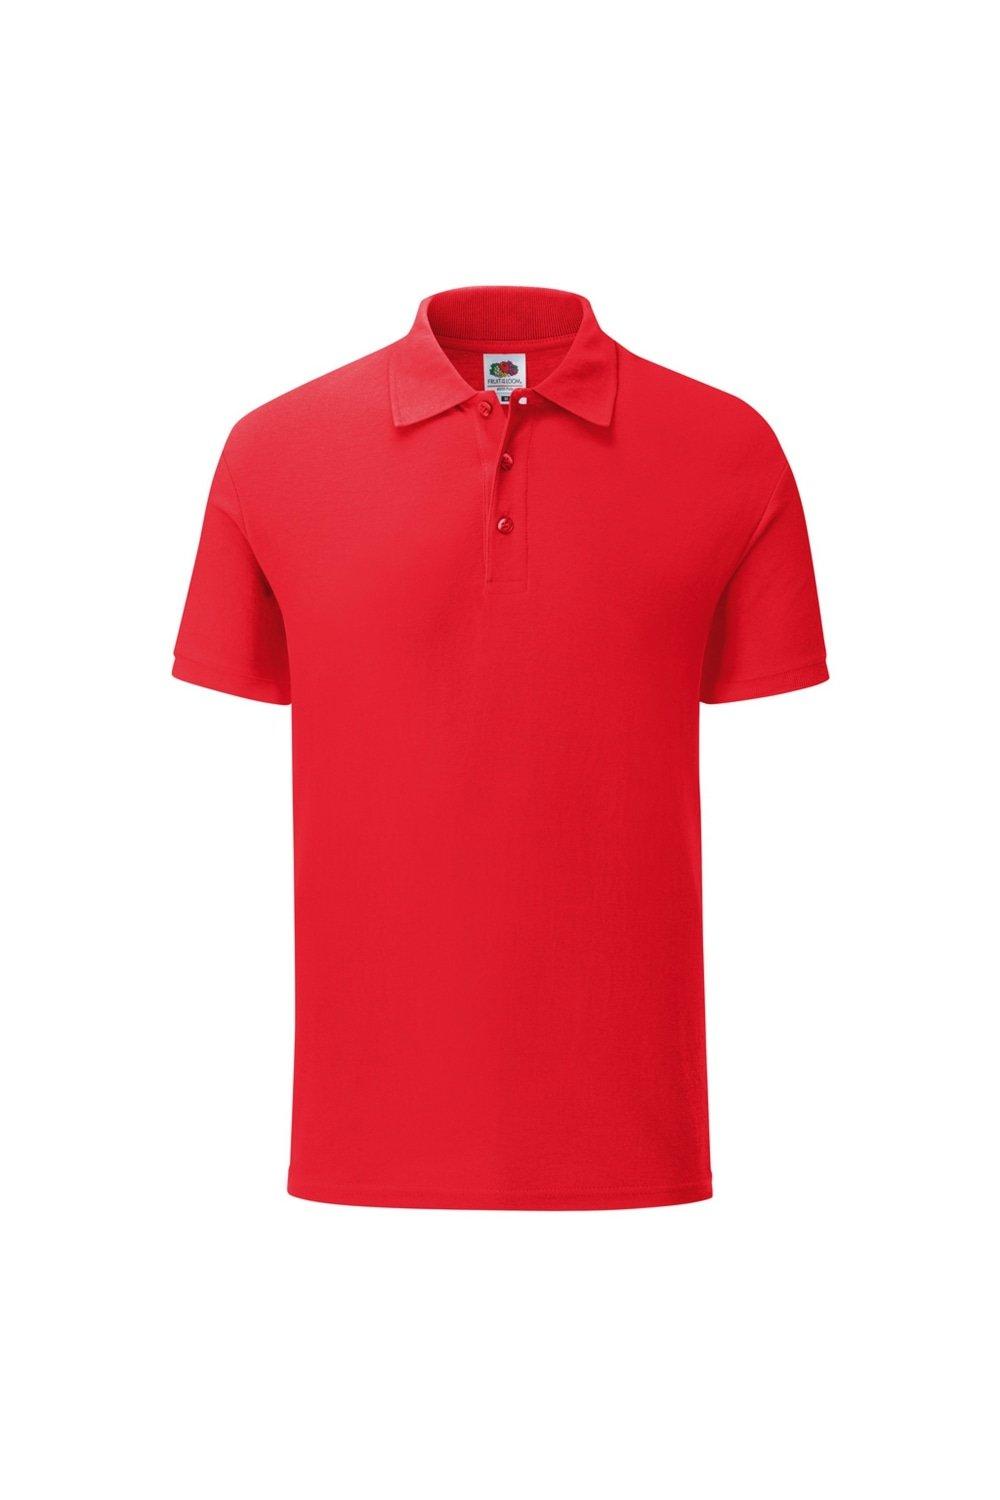 Индивидуальная рубашка-поло пику из поли/хлопка , красный Fruit of the Loom